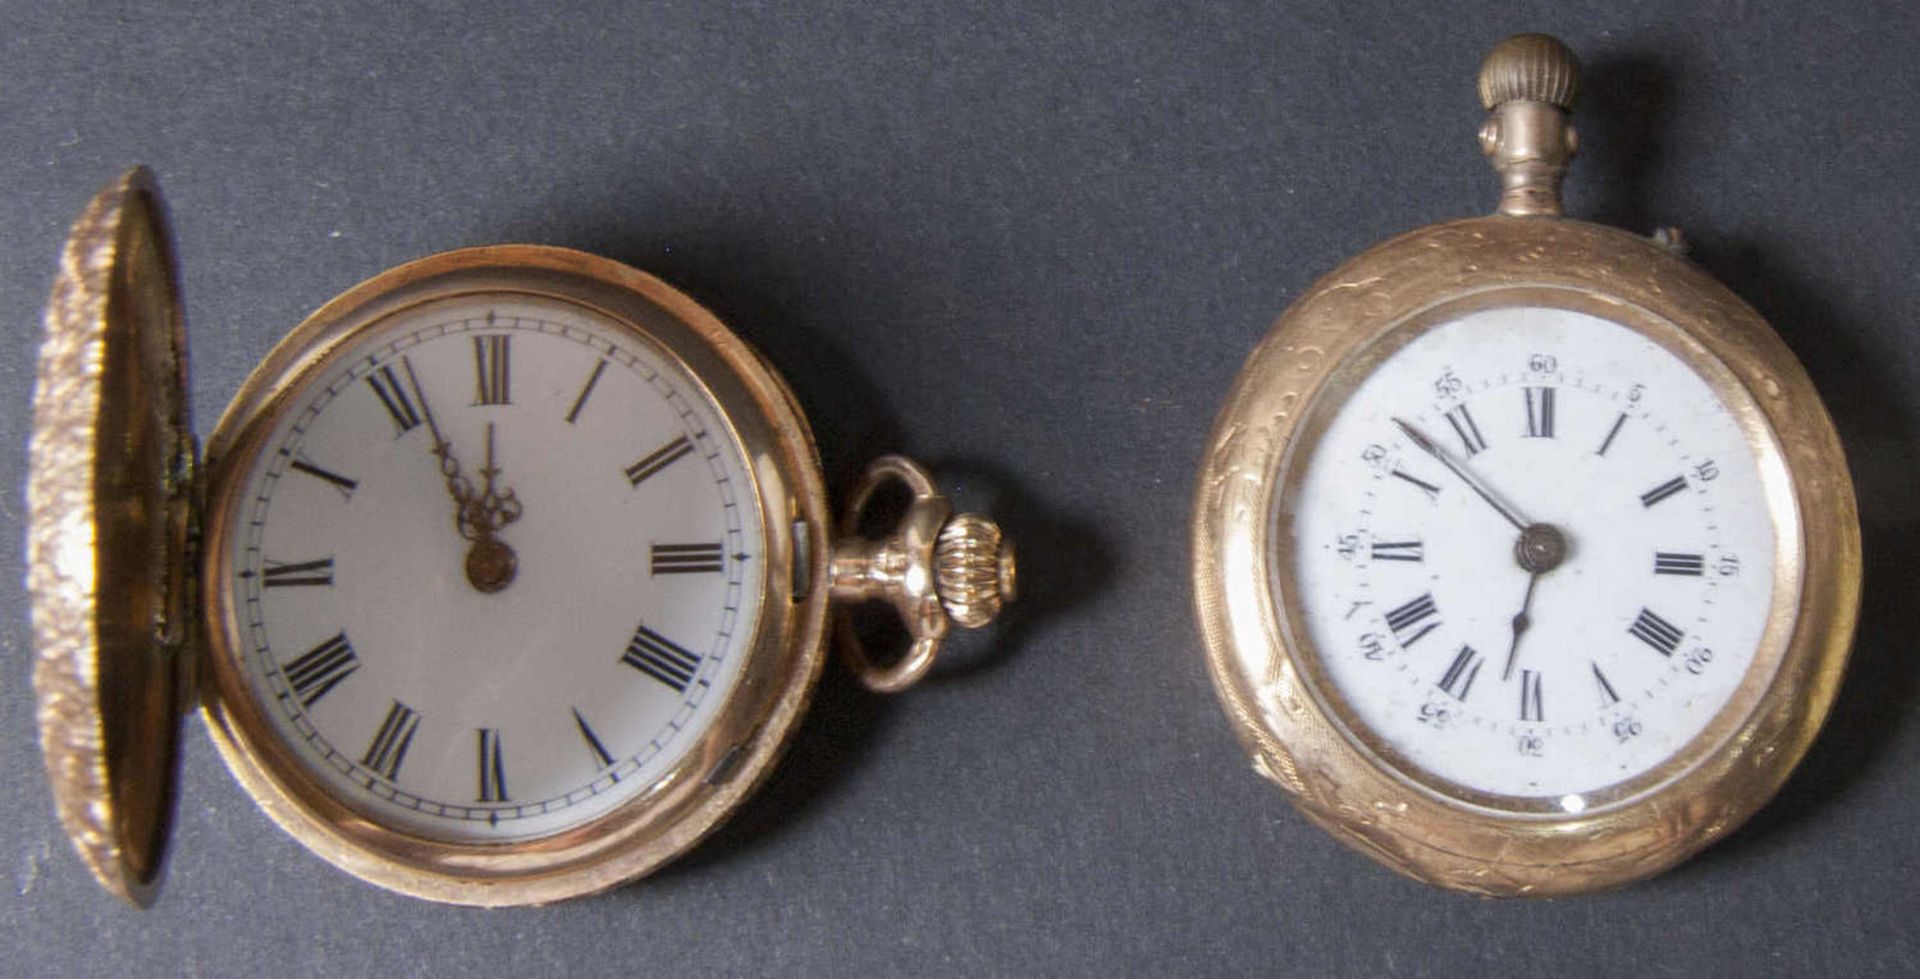 Zwei Damen - Taschenuhren, Gold 585 (geprüft - Gehäuse und Deckel). Gesamtgewicht: ca. 47,2 g. Die